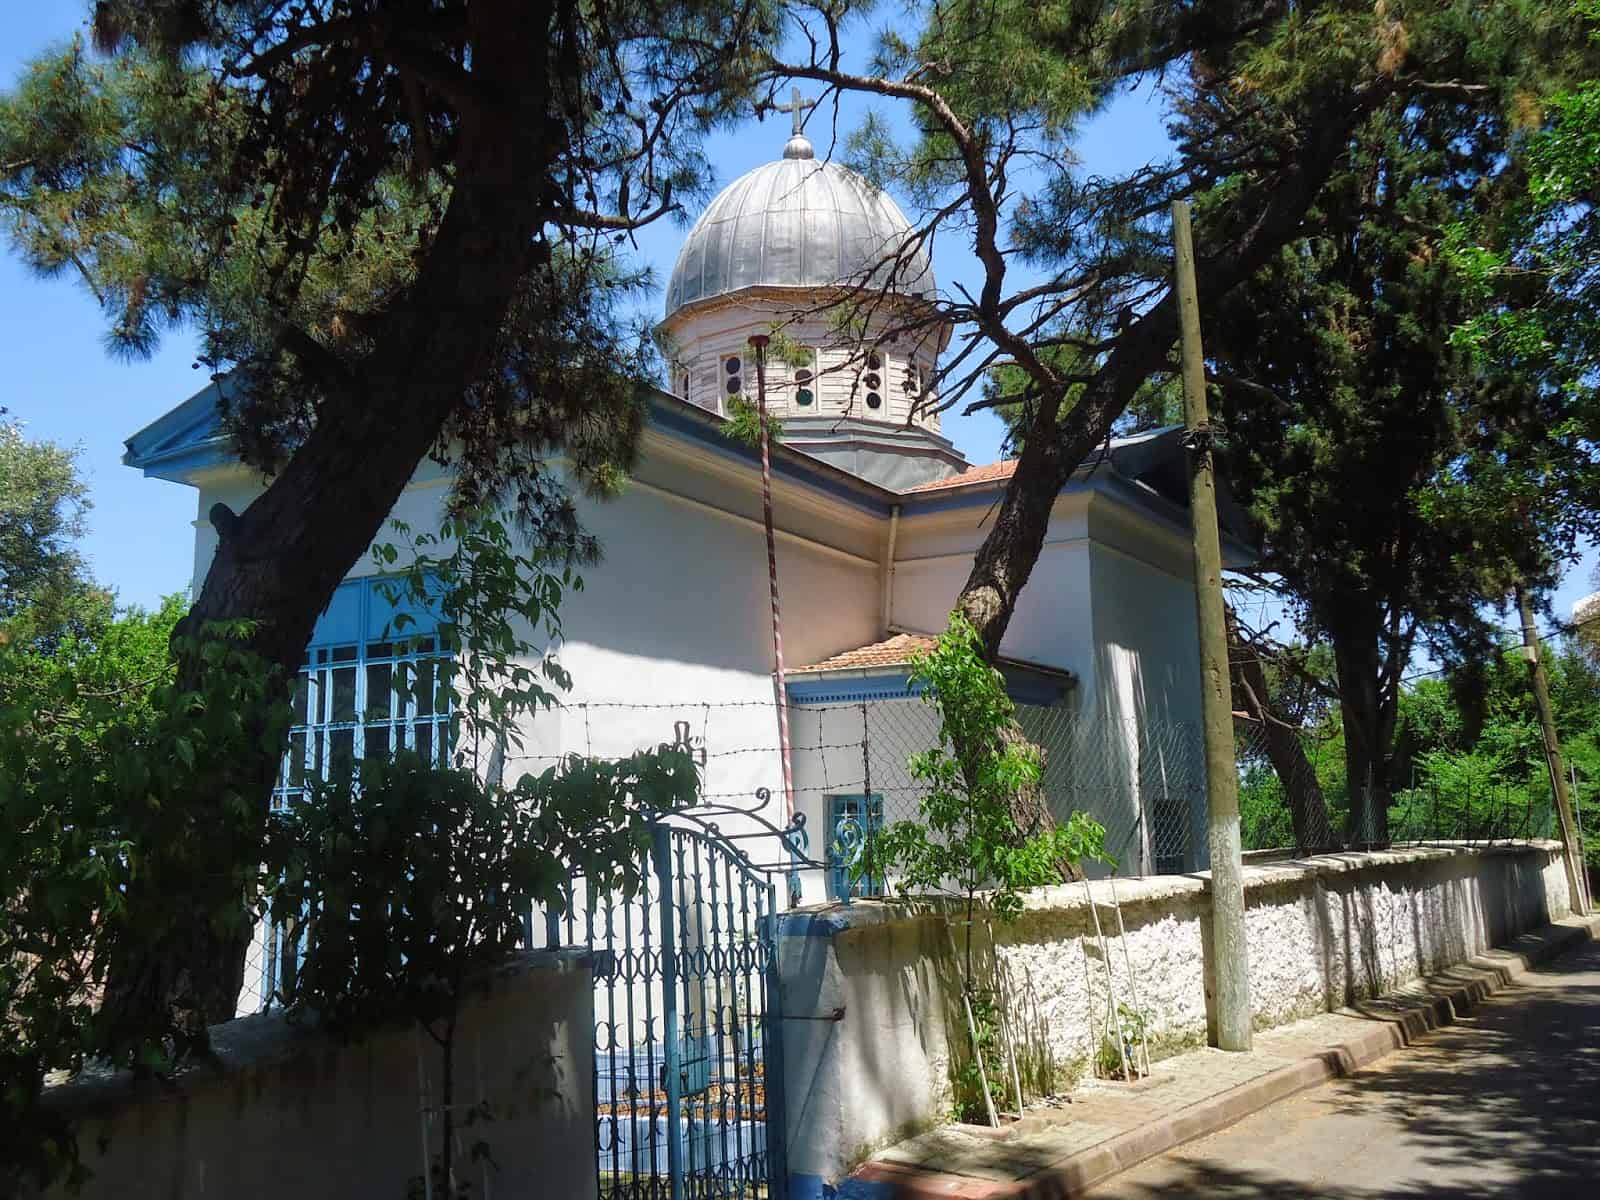 St. George Greek Orthodox Monastery on Burgazada, Adalar, Istanbul, Turkey